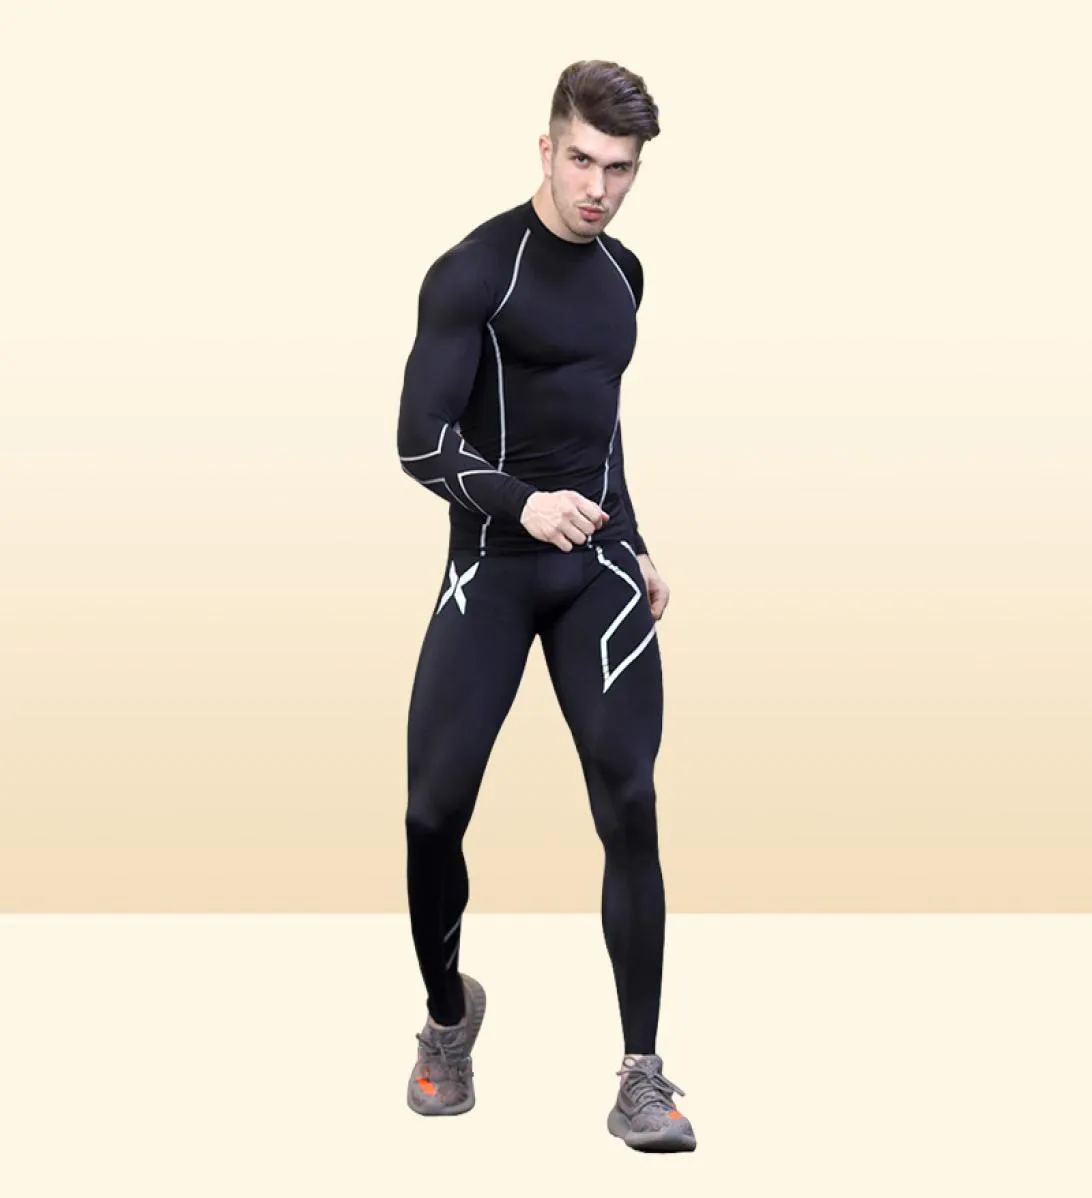 Homens ginásio musculação compressão apertado calças compridas preto joggers mallas hombre fitness correndo calças 2xu1401563